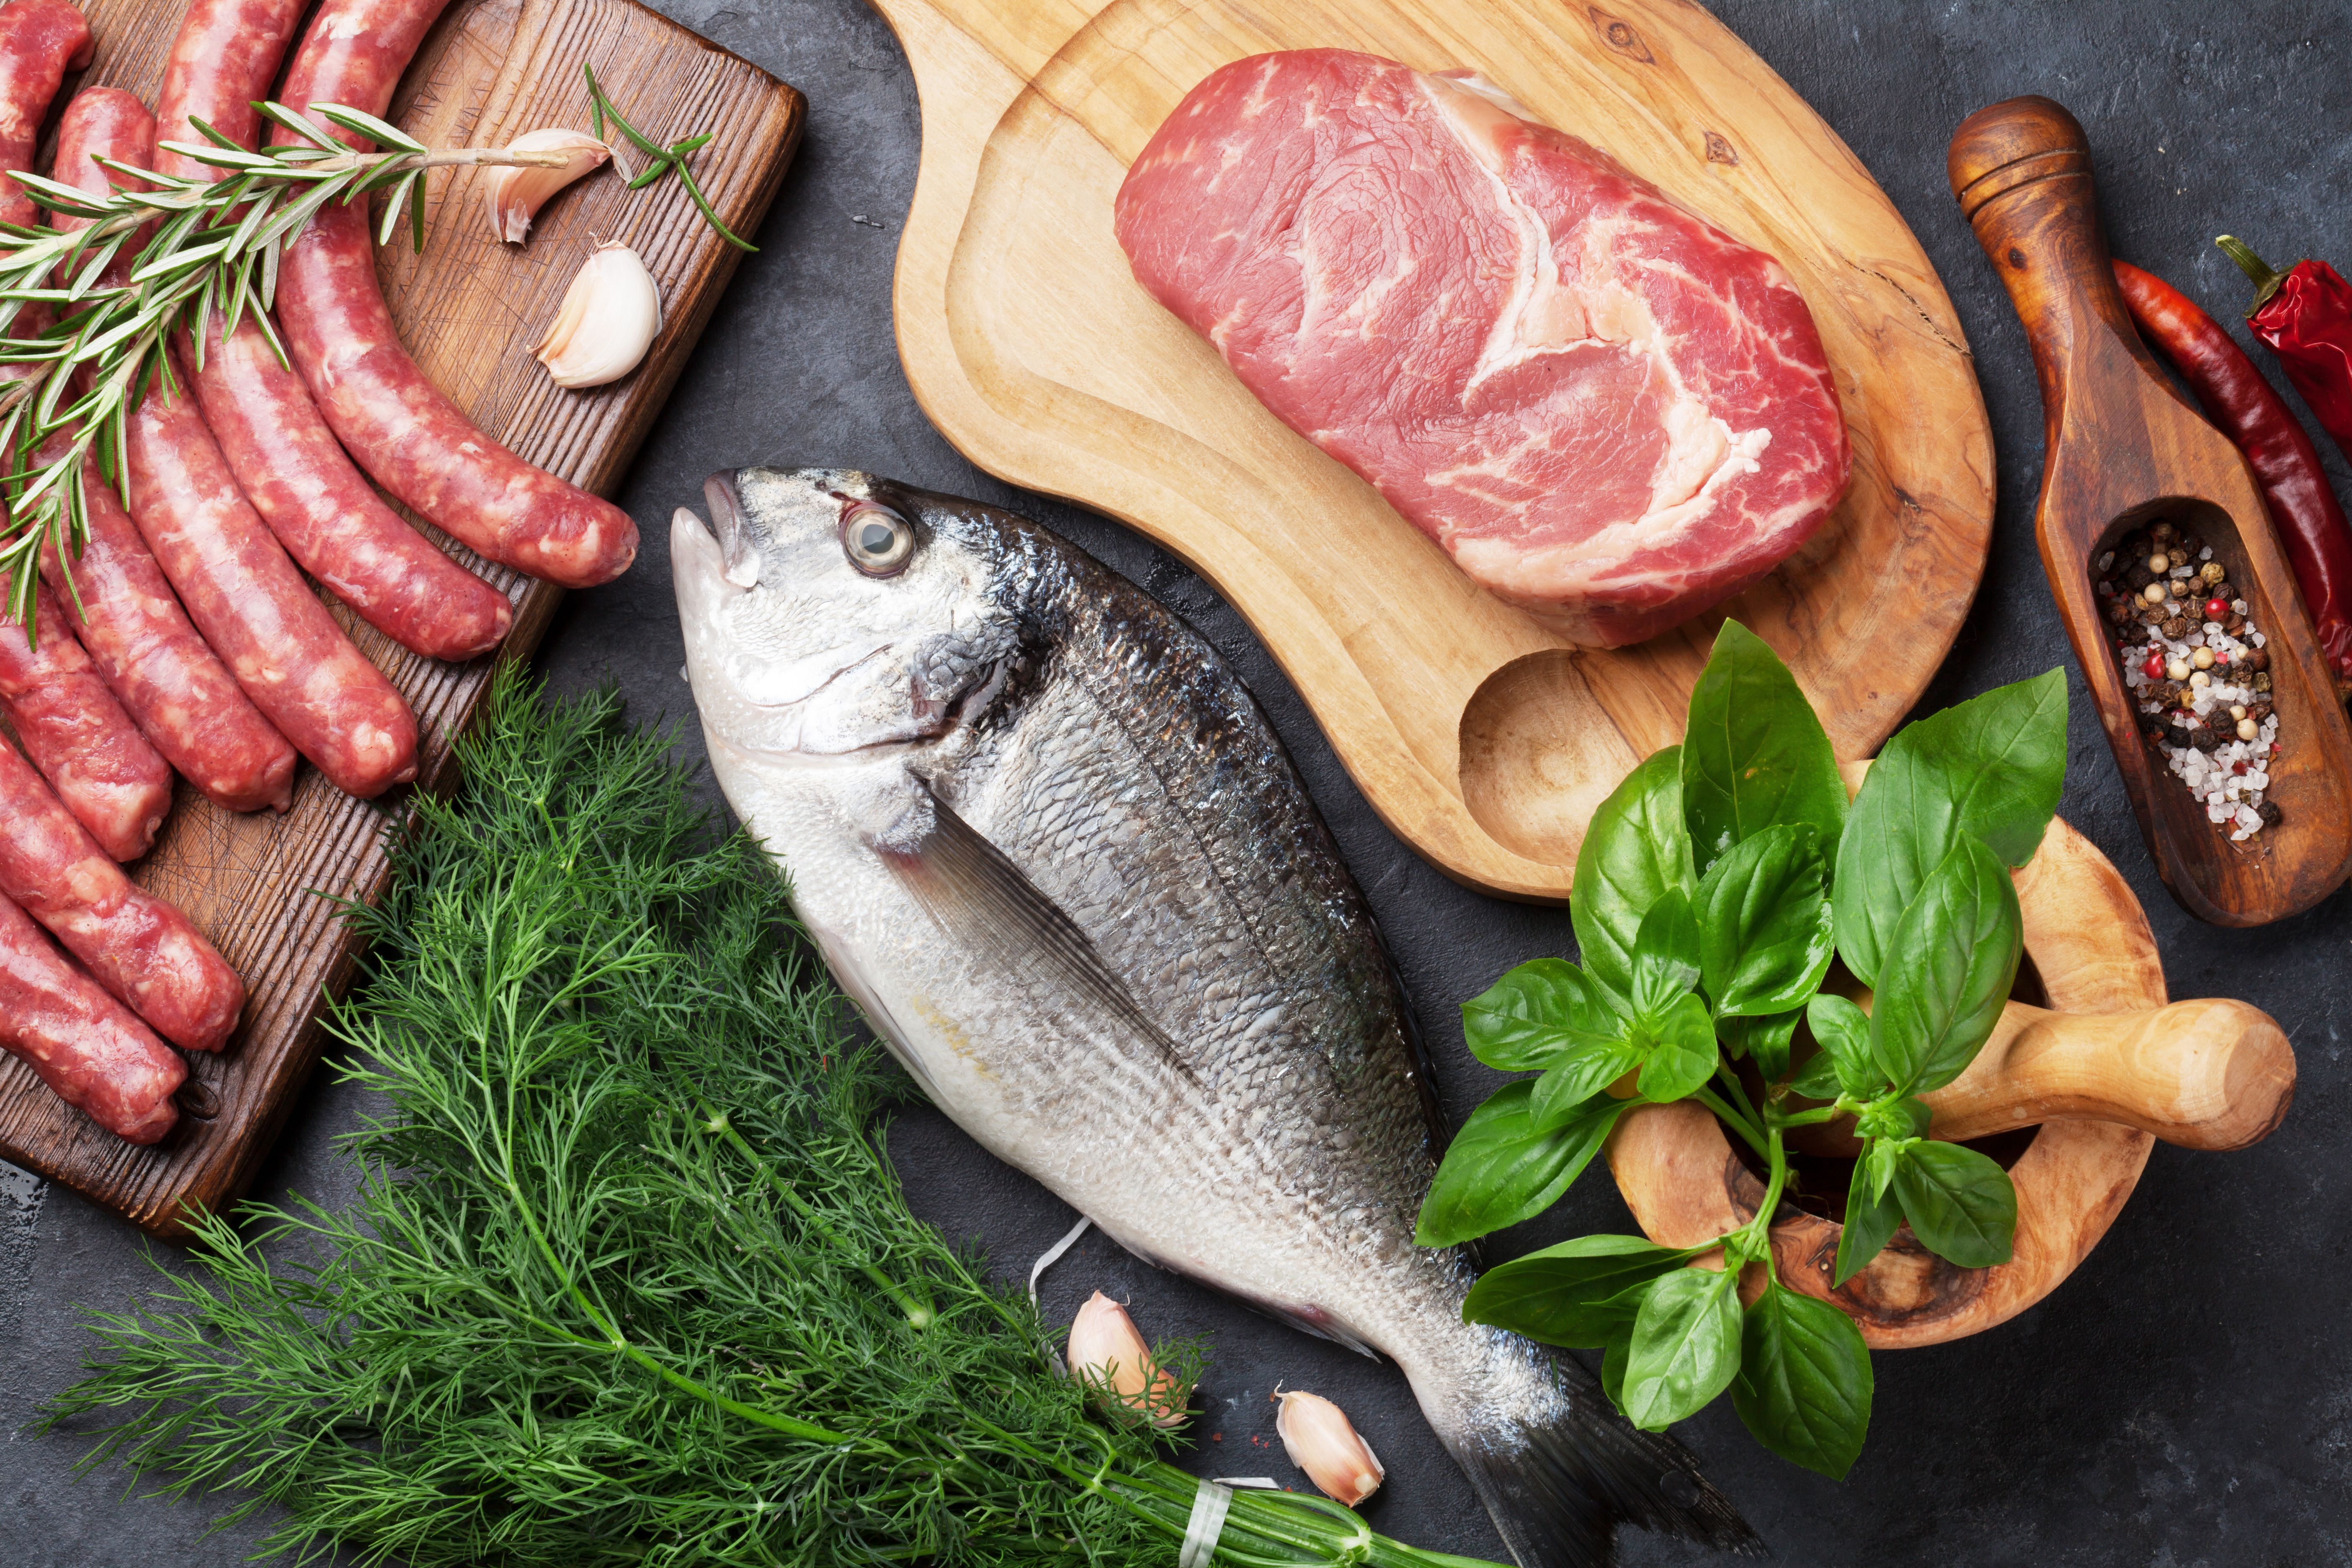 Fleisch, Wurstwaren und Fisch gehören zu den säurebildenden Lebensmitteln.